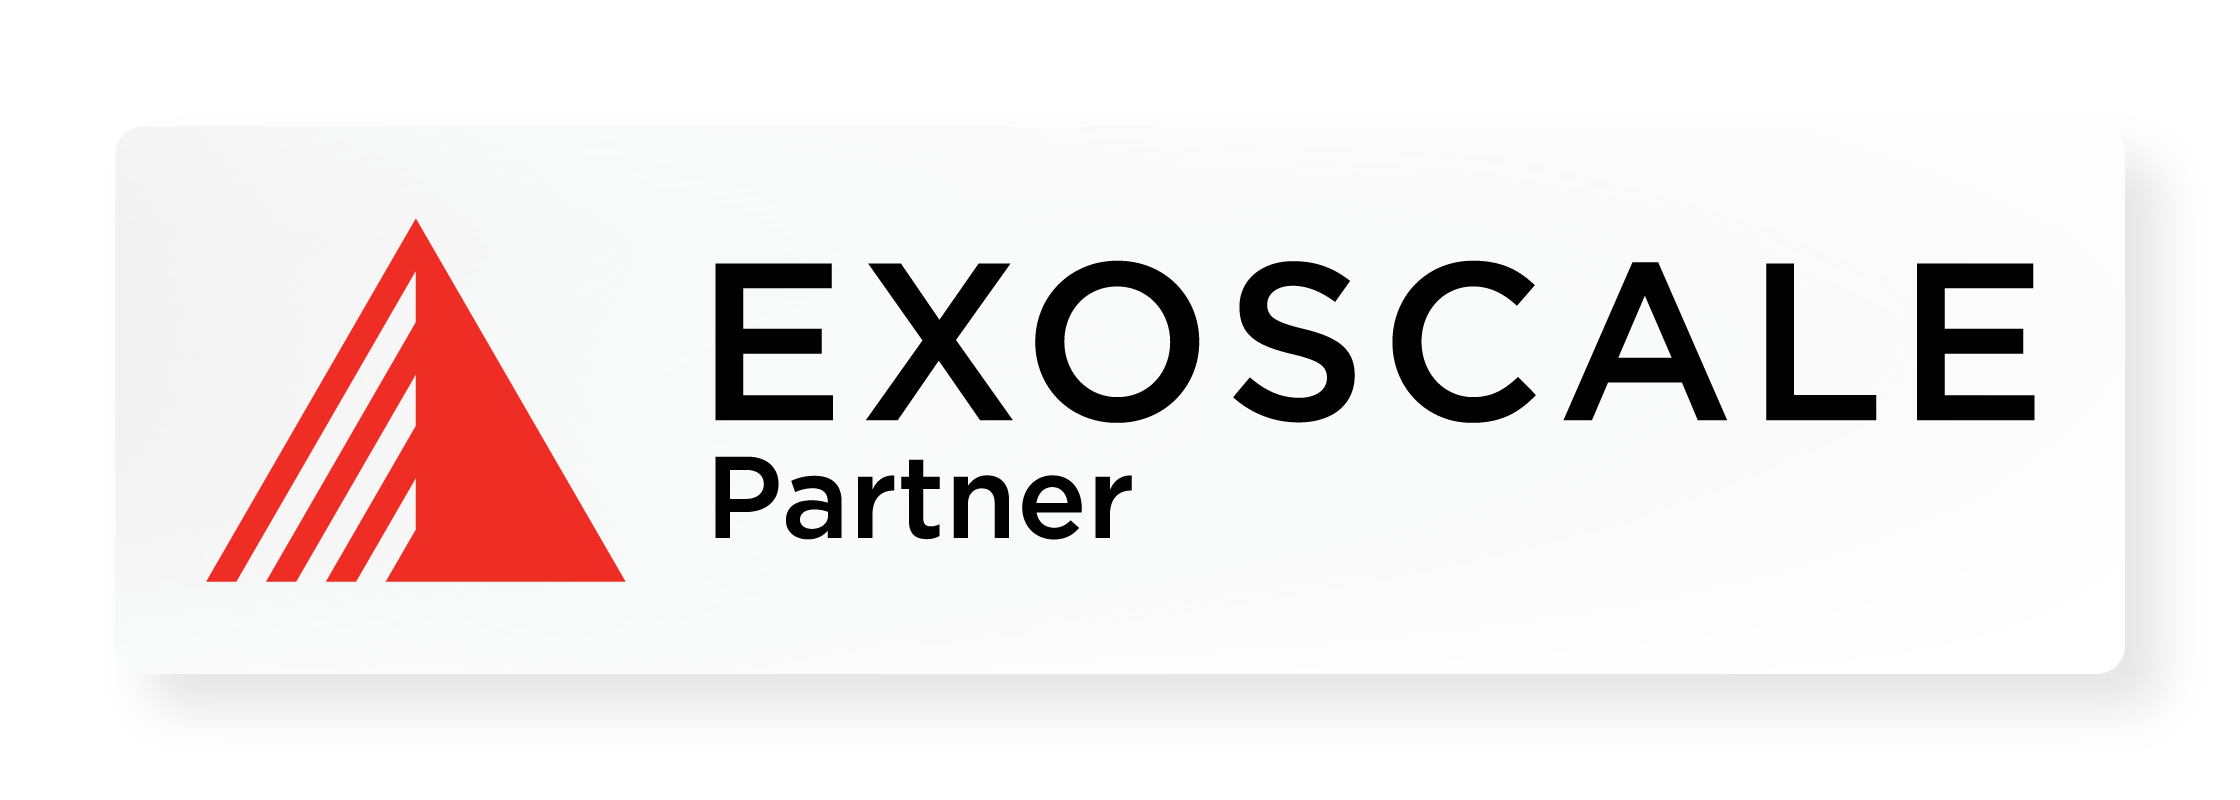 Partner Logo Exoscale